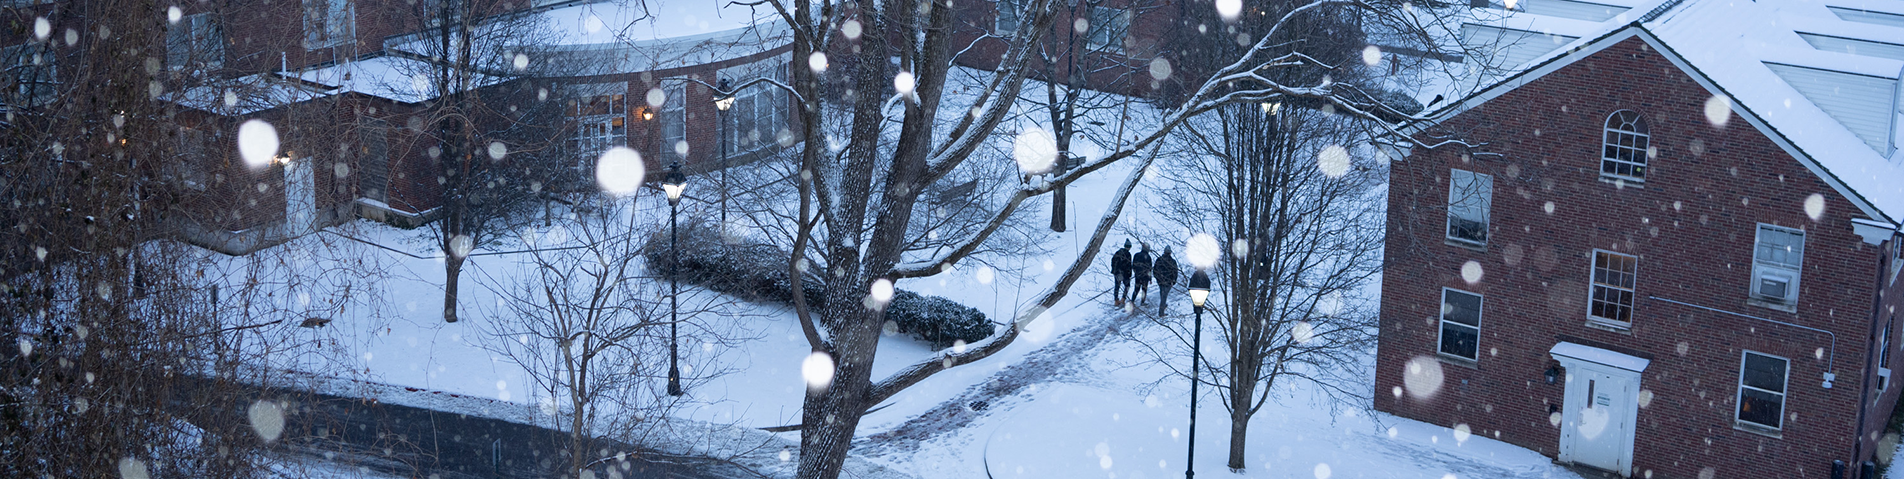 campus on a snowy night